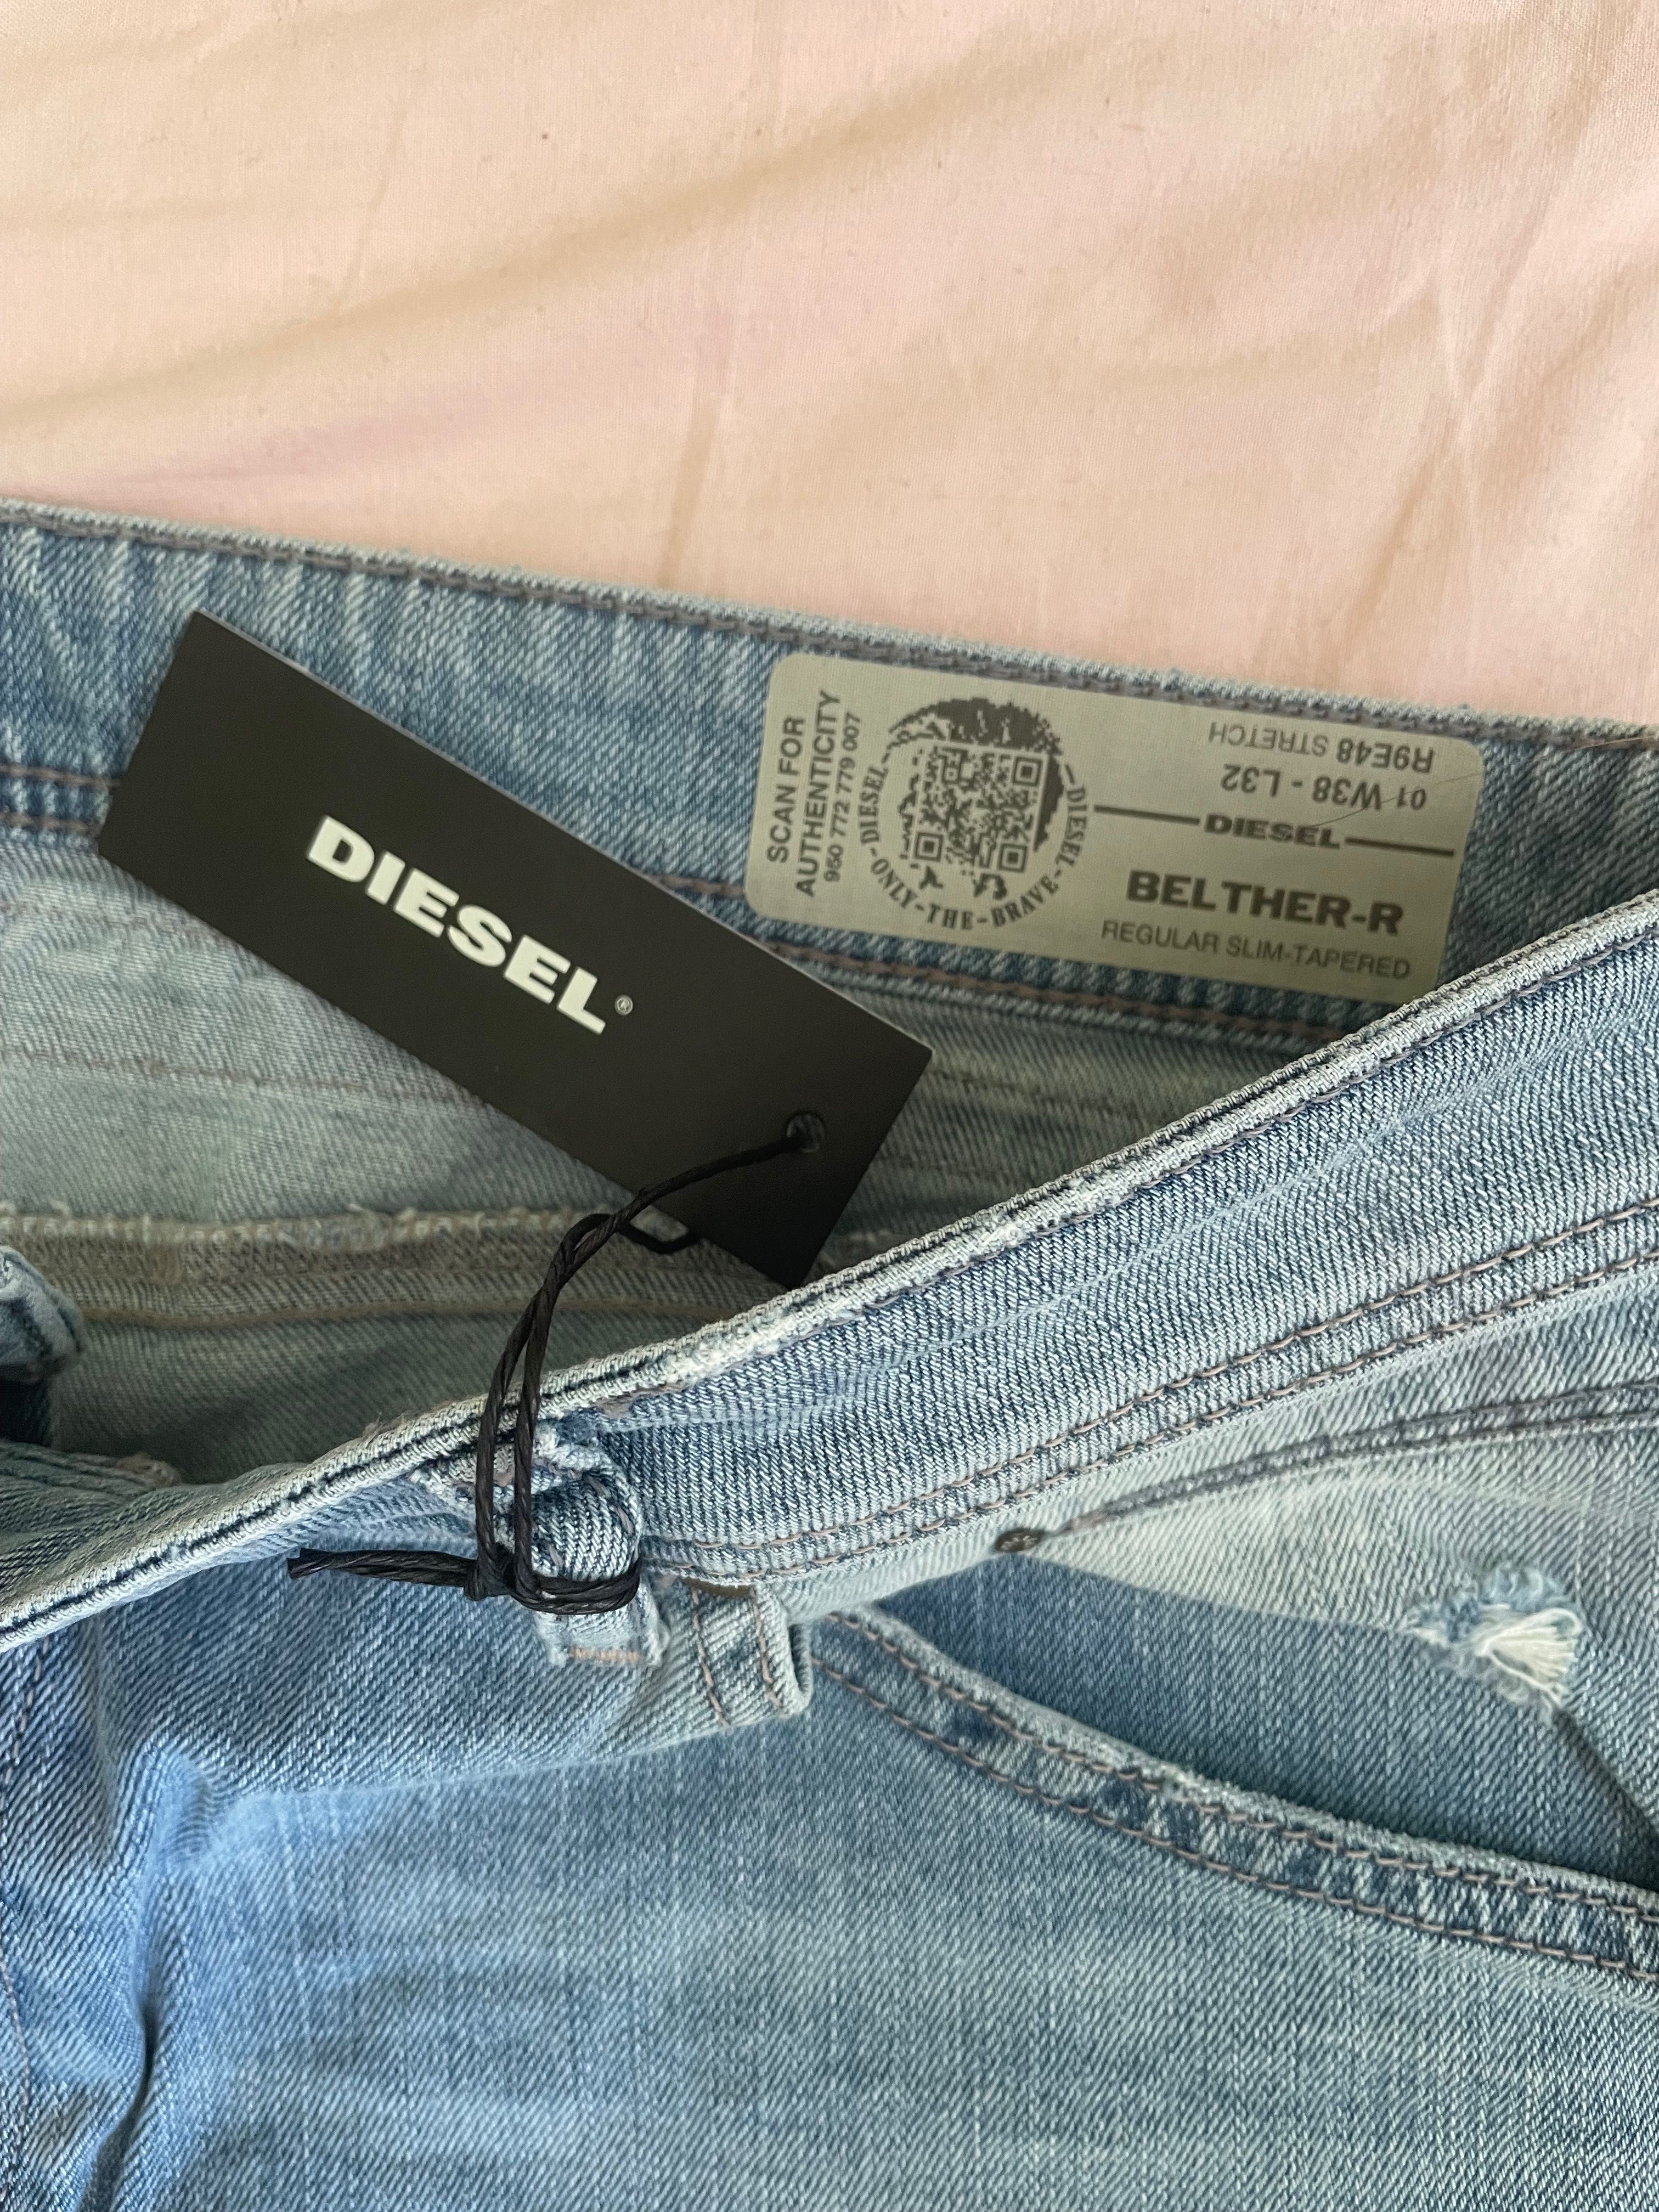 Оригинални Diesel мъжки дънки с етикети, чисто нови